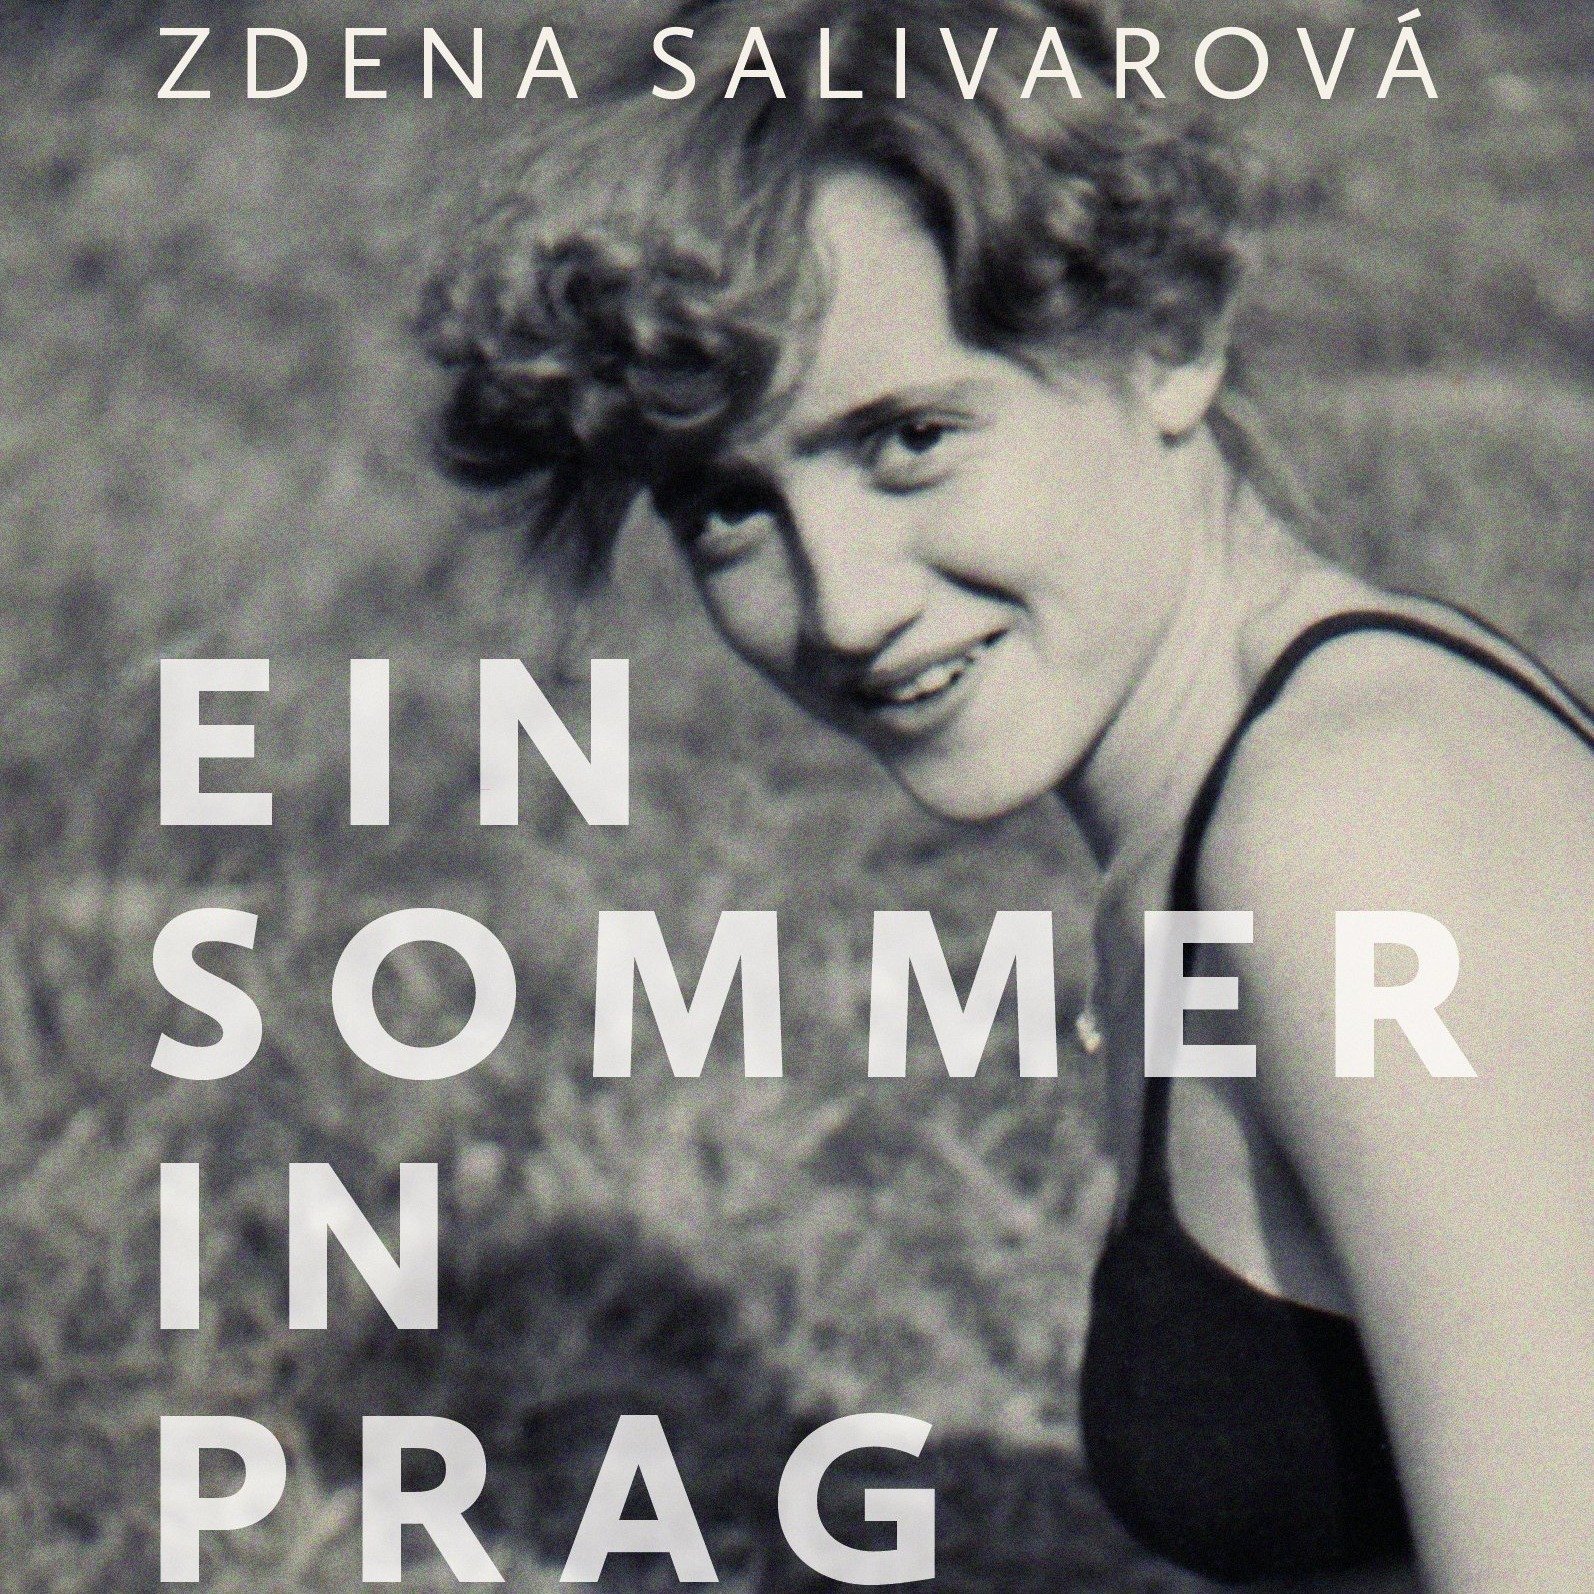 Zdena Salivarová: "Ein Sommer in Prag"